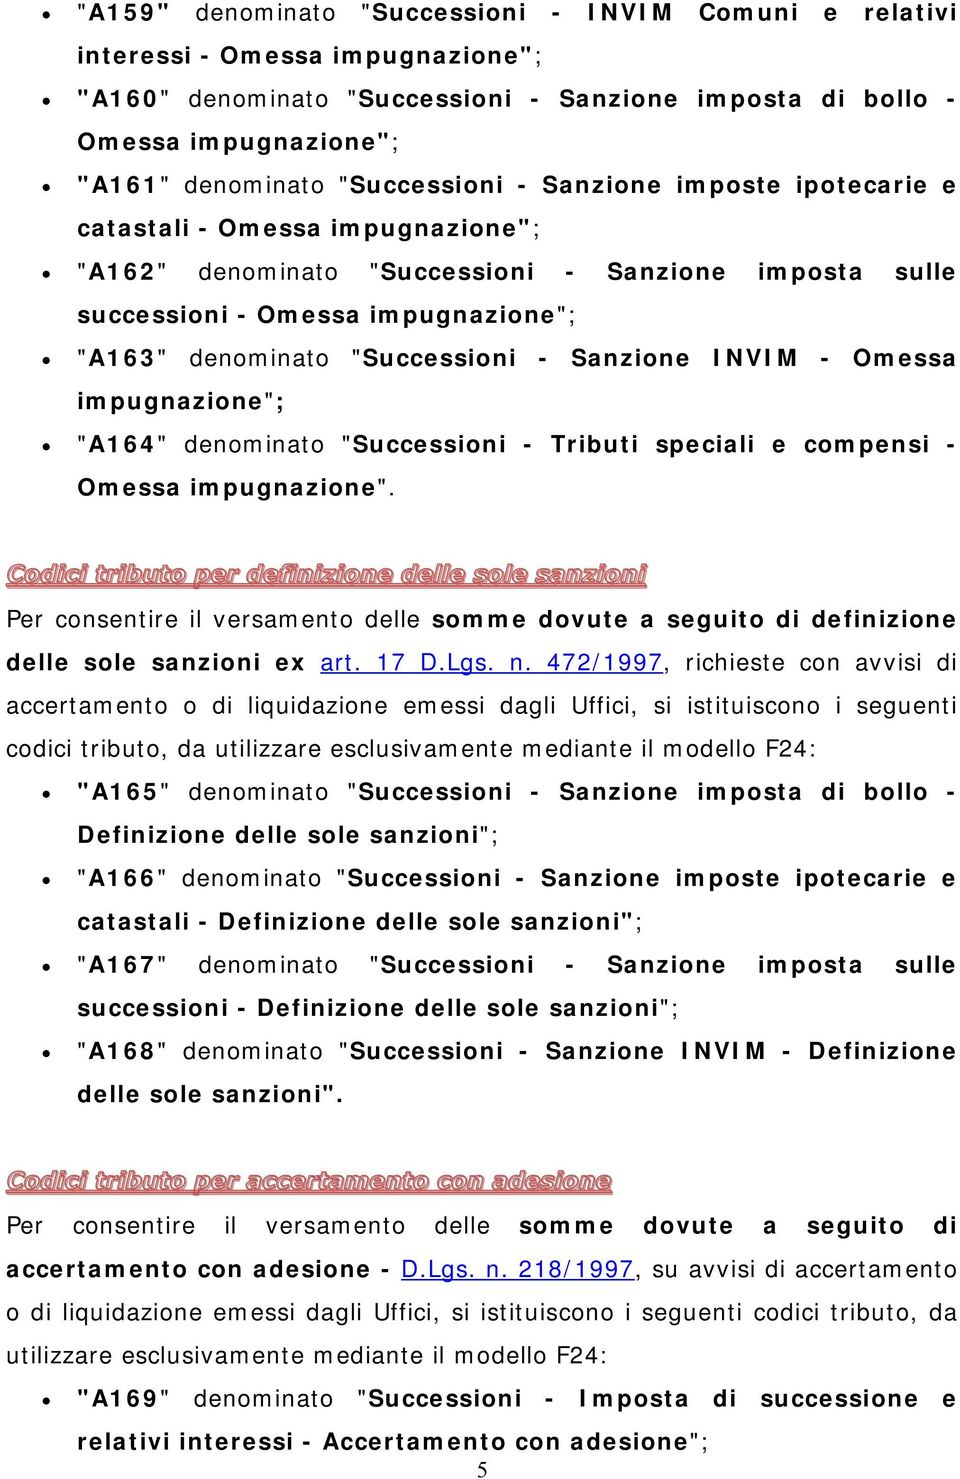 "Successioni - Sanzione INVIM - Omessa impugnazione"; "A164" denominato "Successioni - Tributi speciali e compensi - Omessa impugnazione".